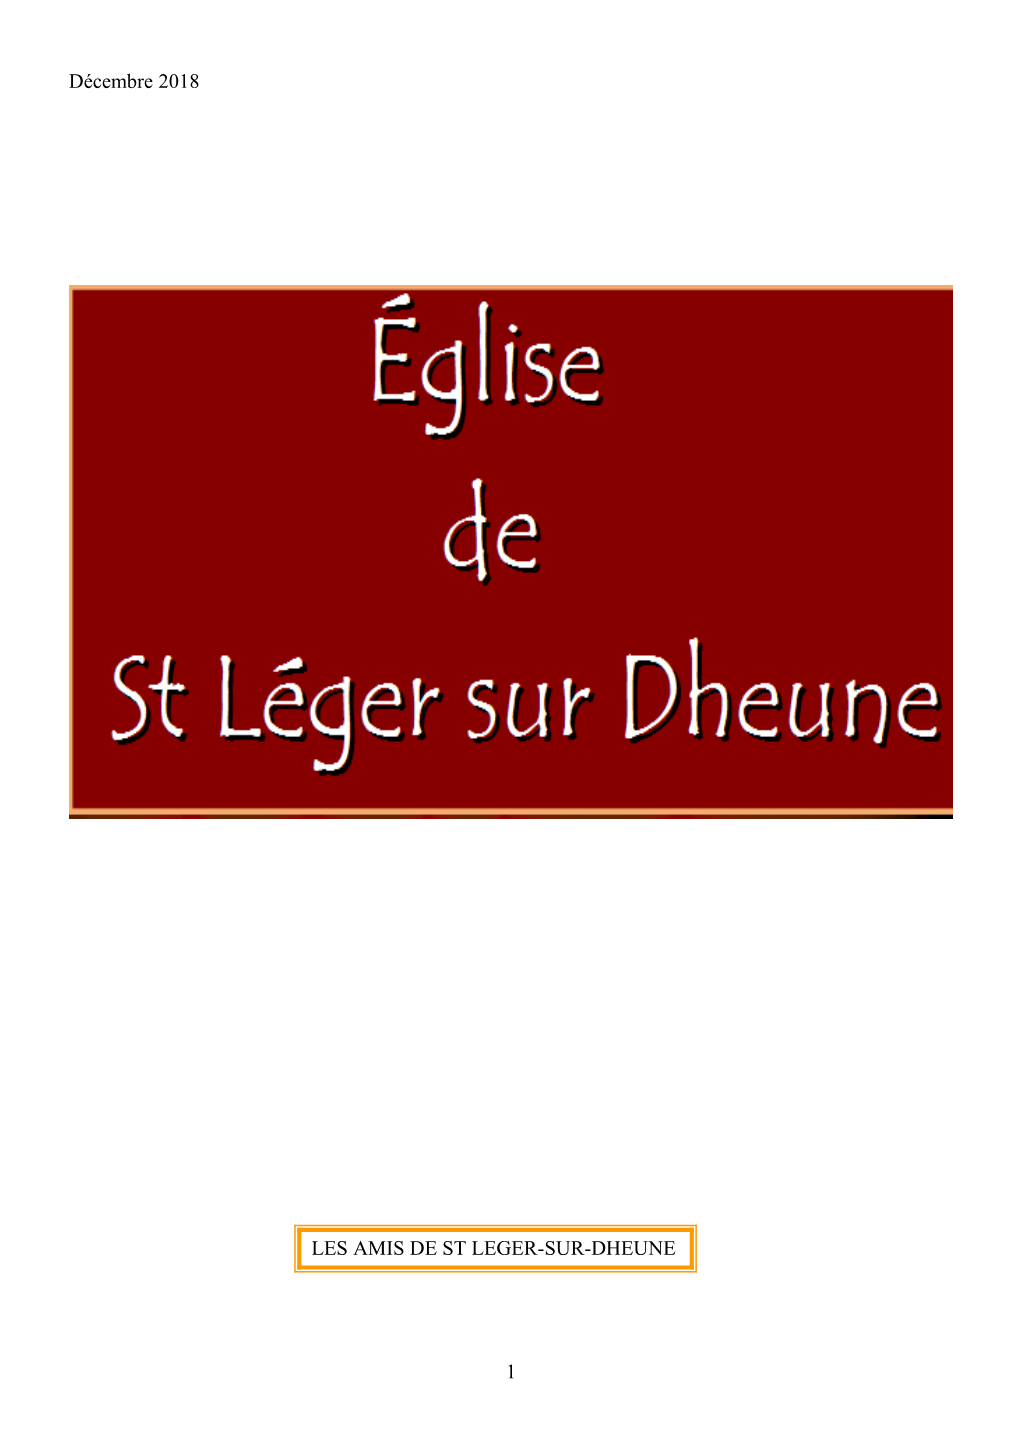 Décembre 2018 1 LES AMIS DE ST LEGER-SUR-DHEUNE